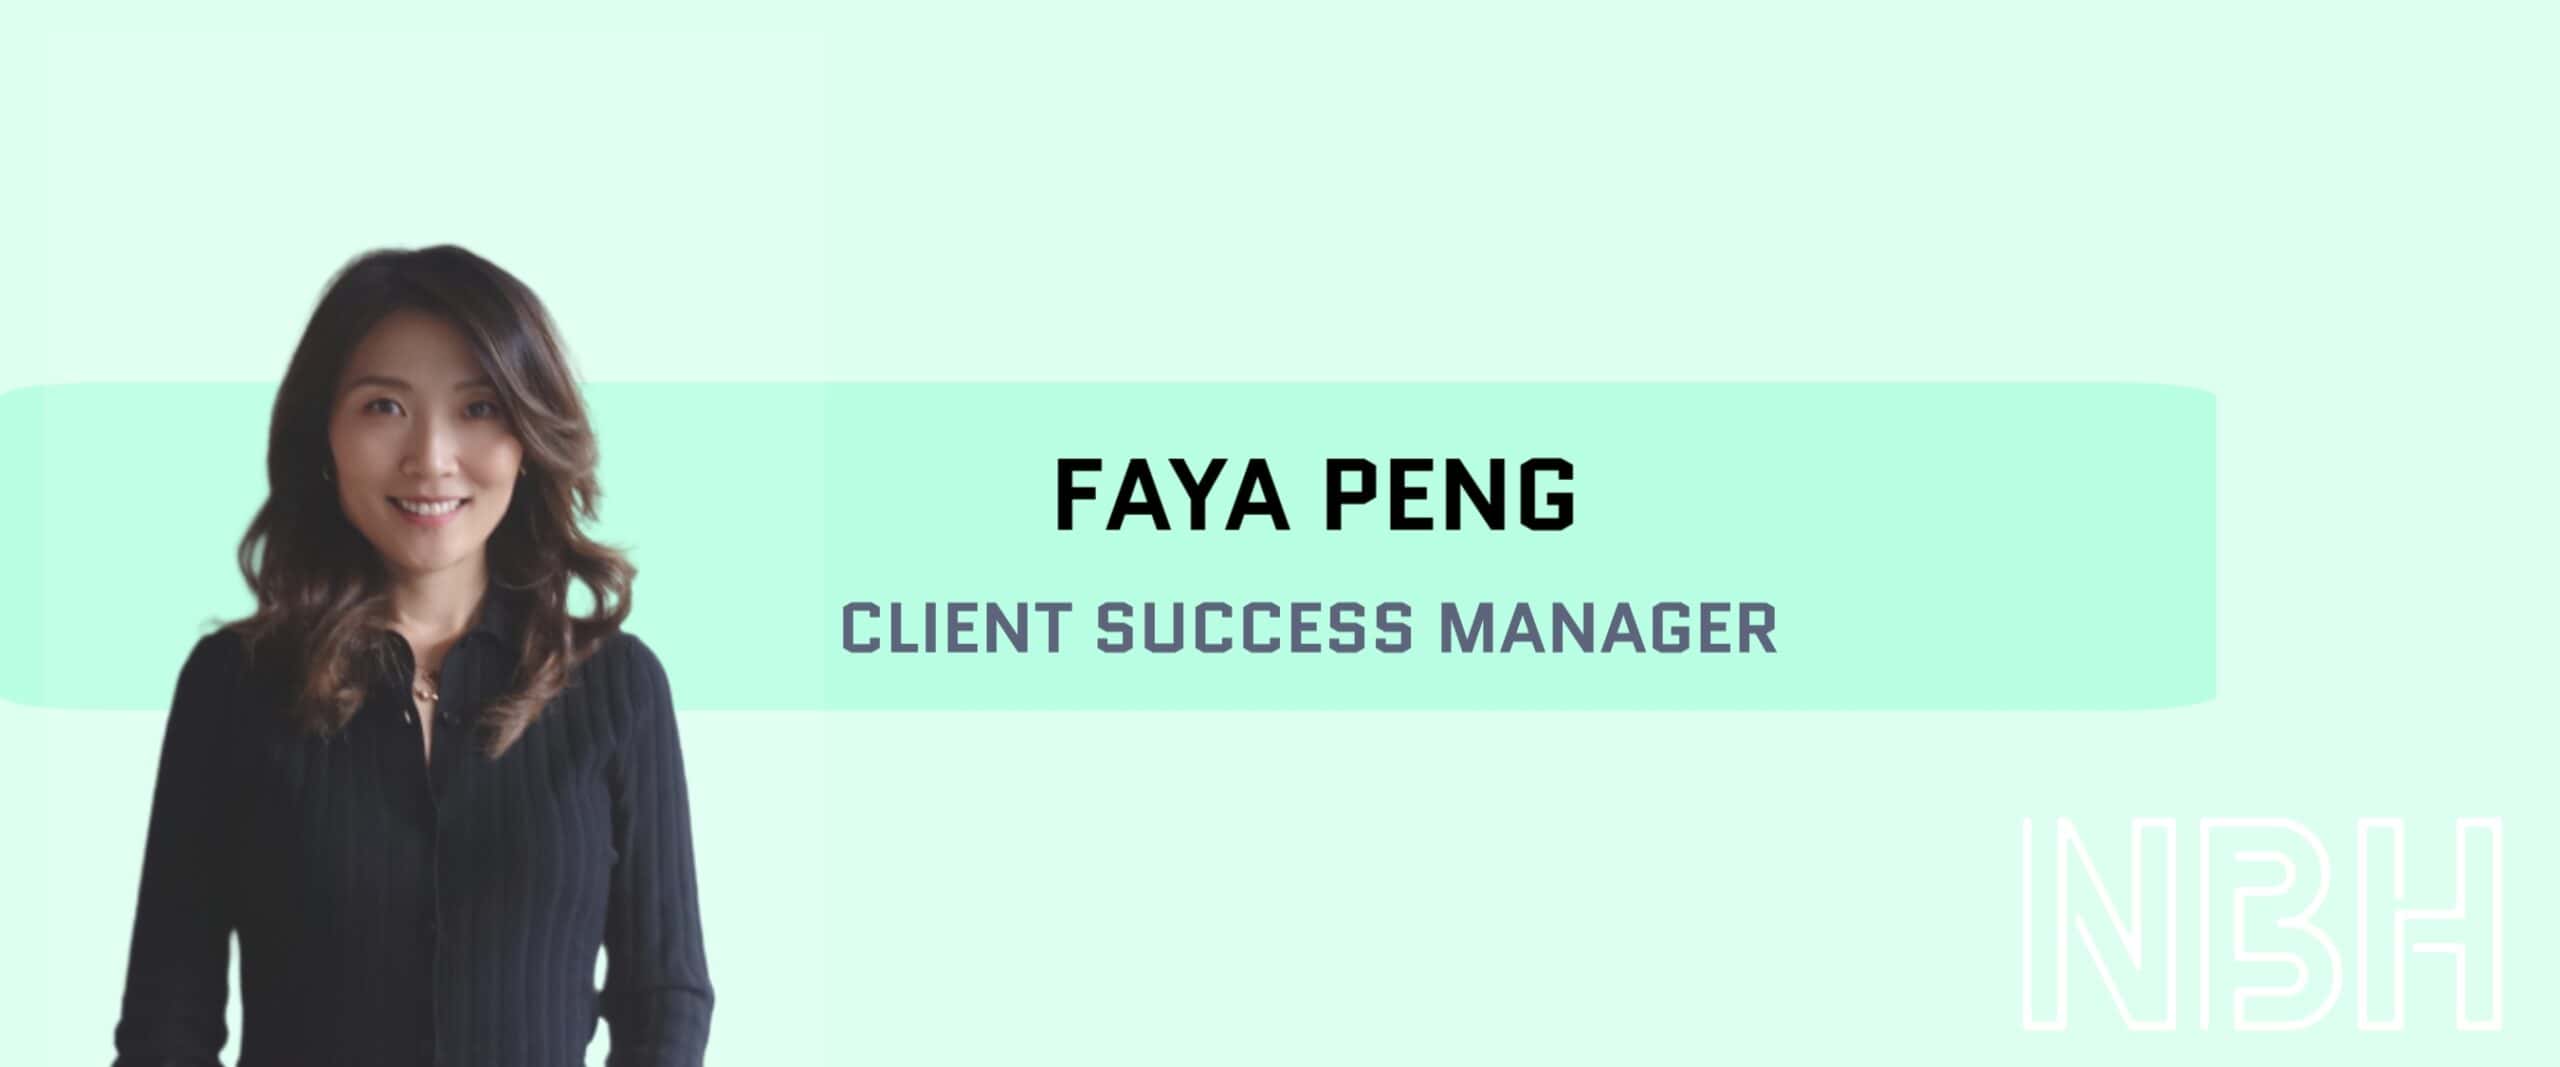 Möt Faya Peng - NBH:s nya stjärna i teamet!